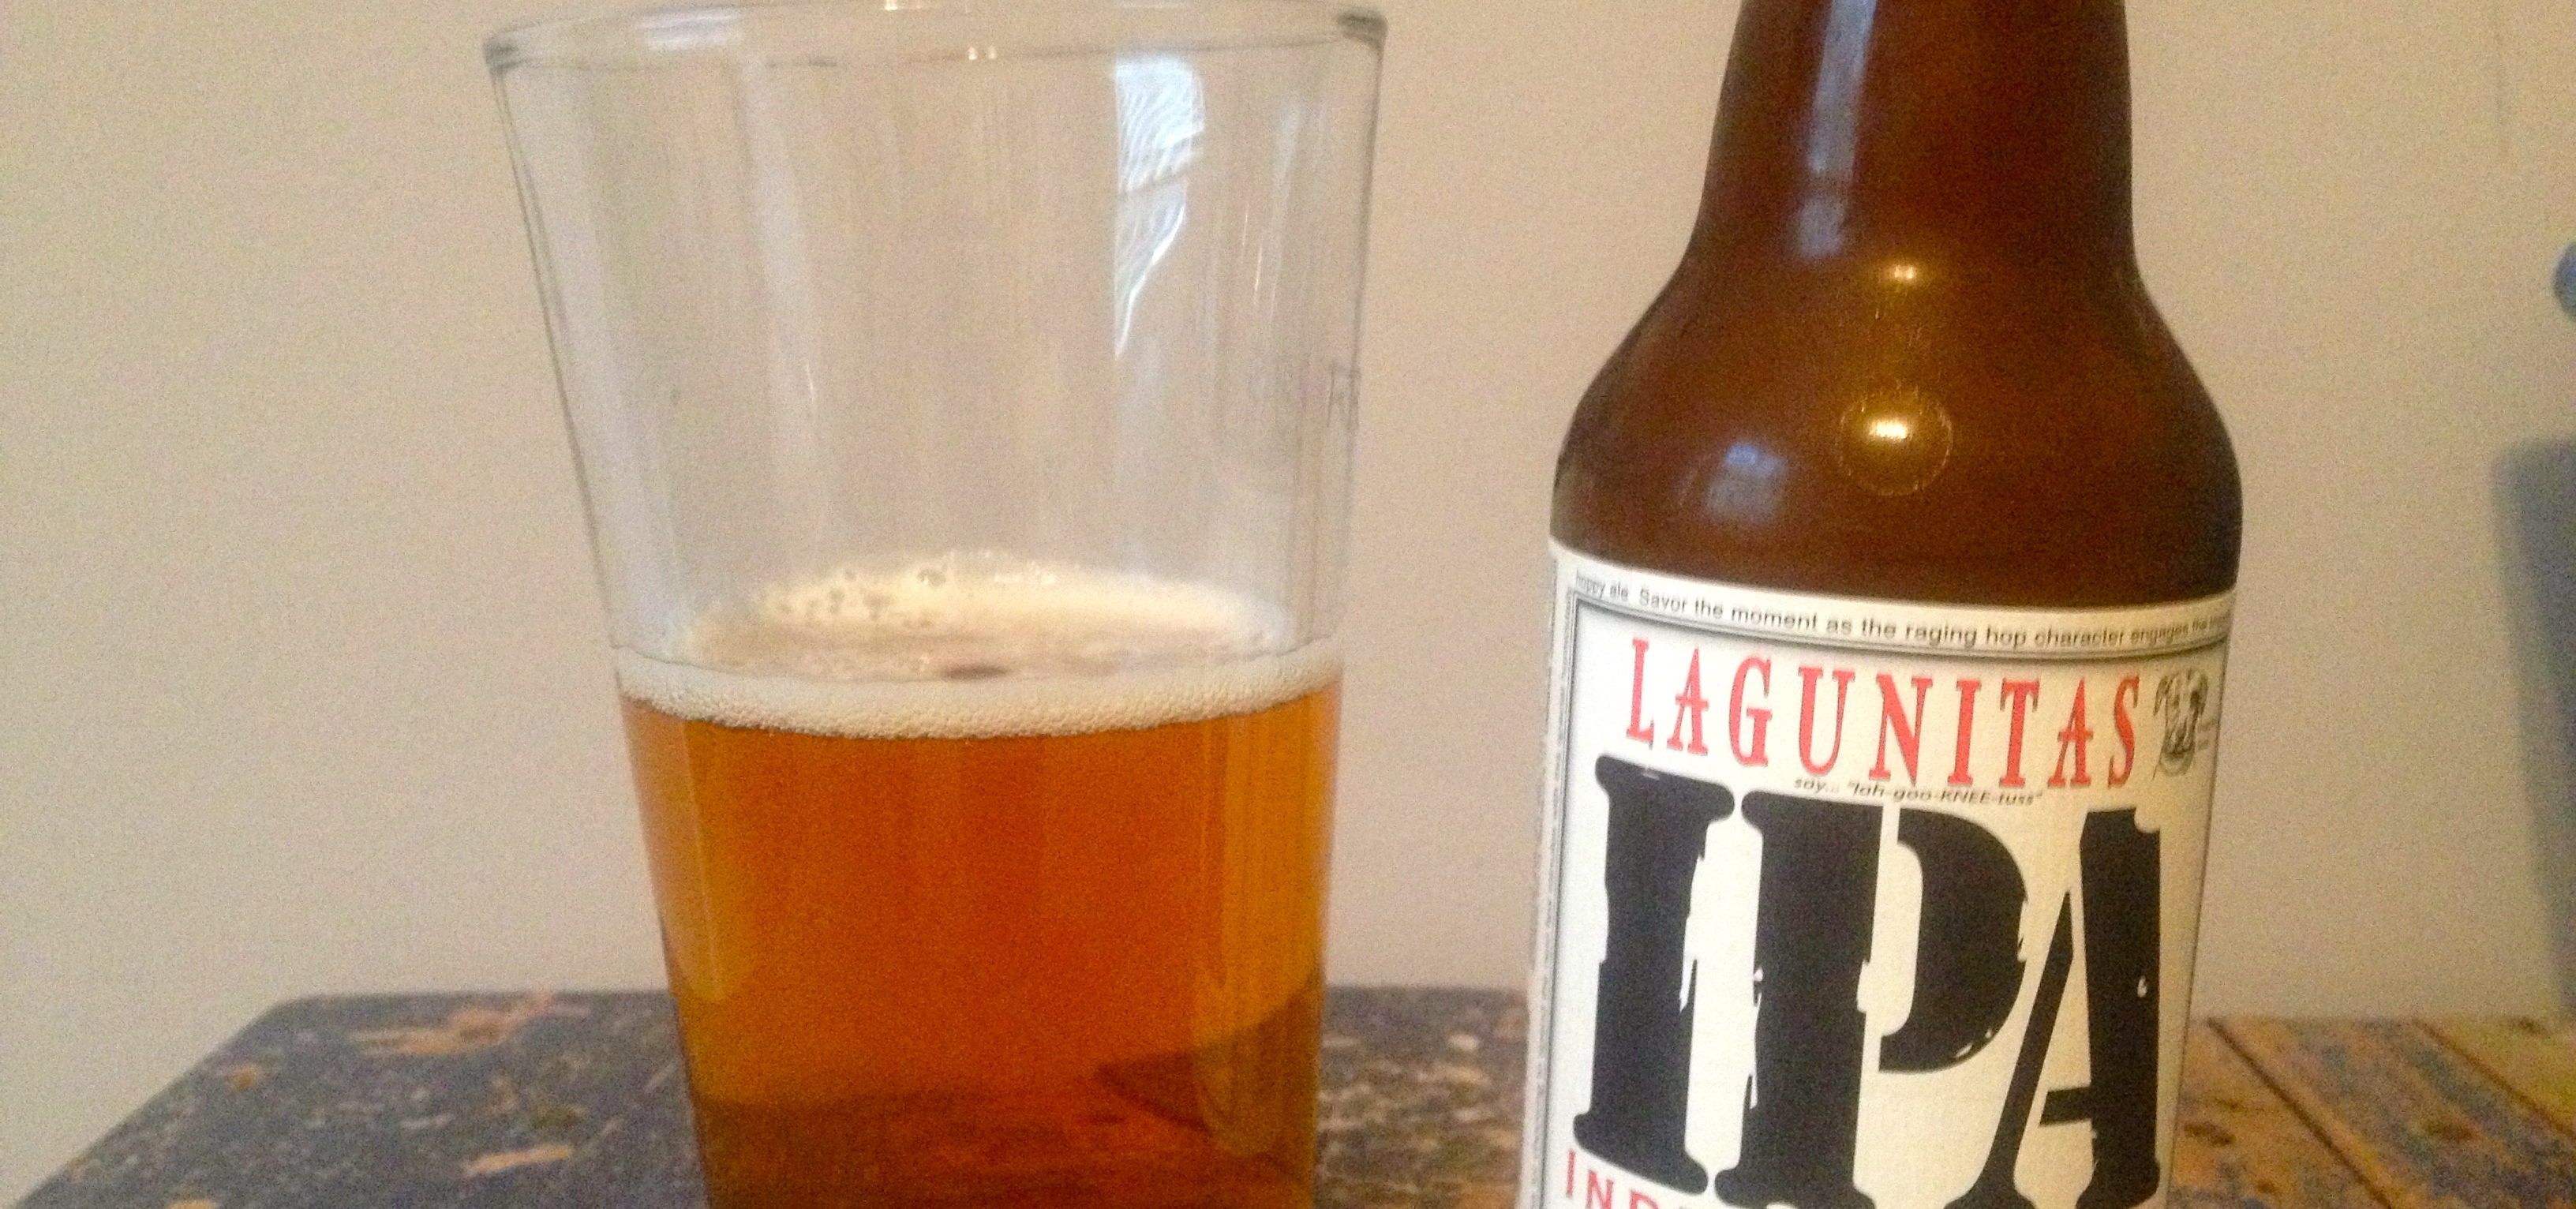 Lagunitas IPA – Lagunitas Brewing Company